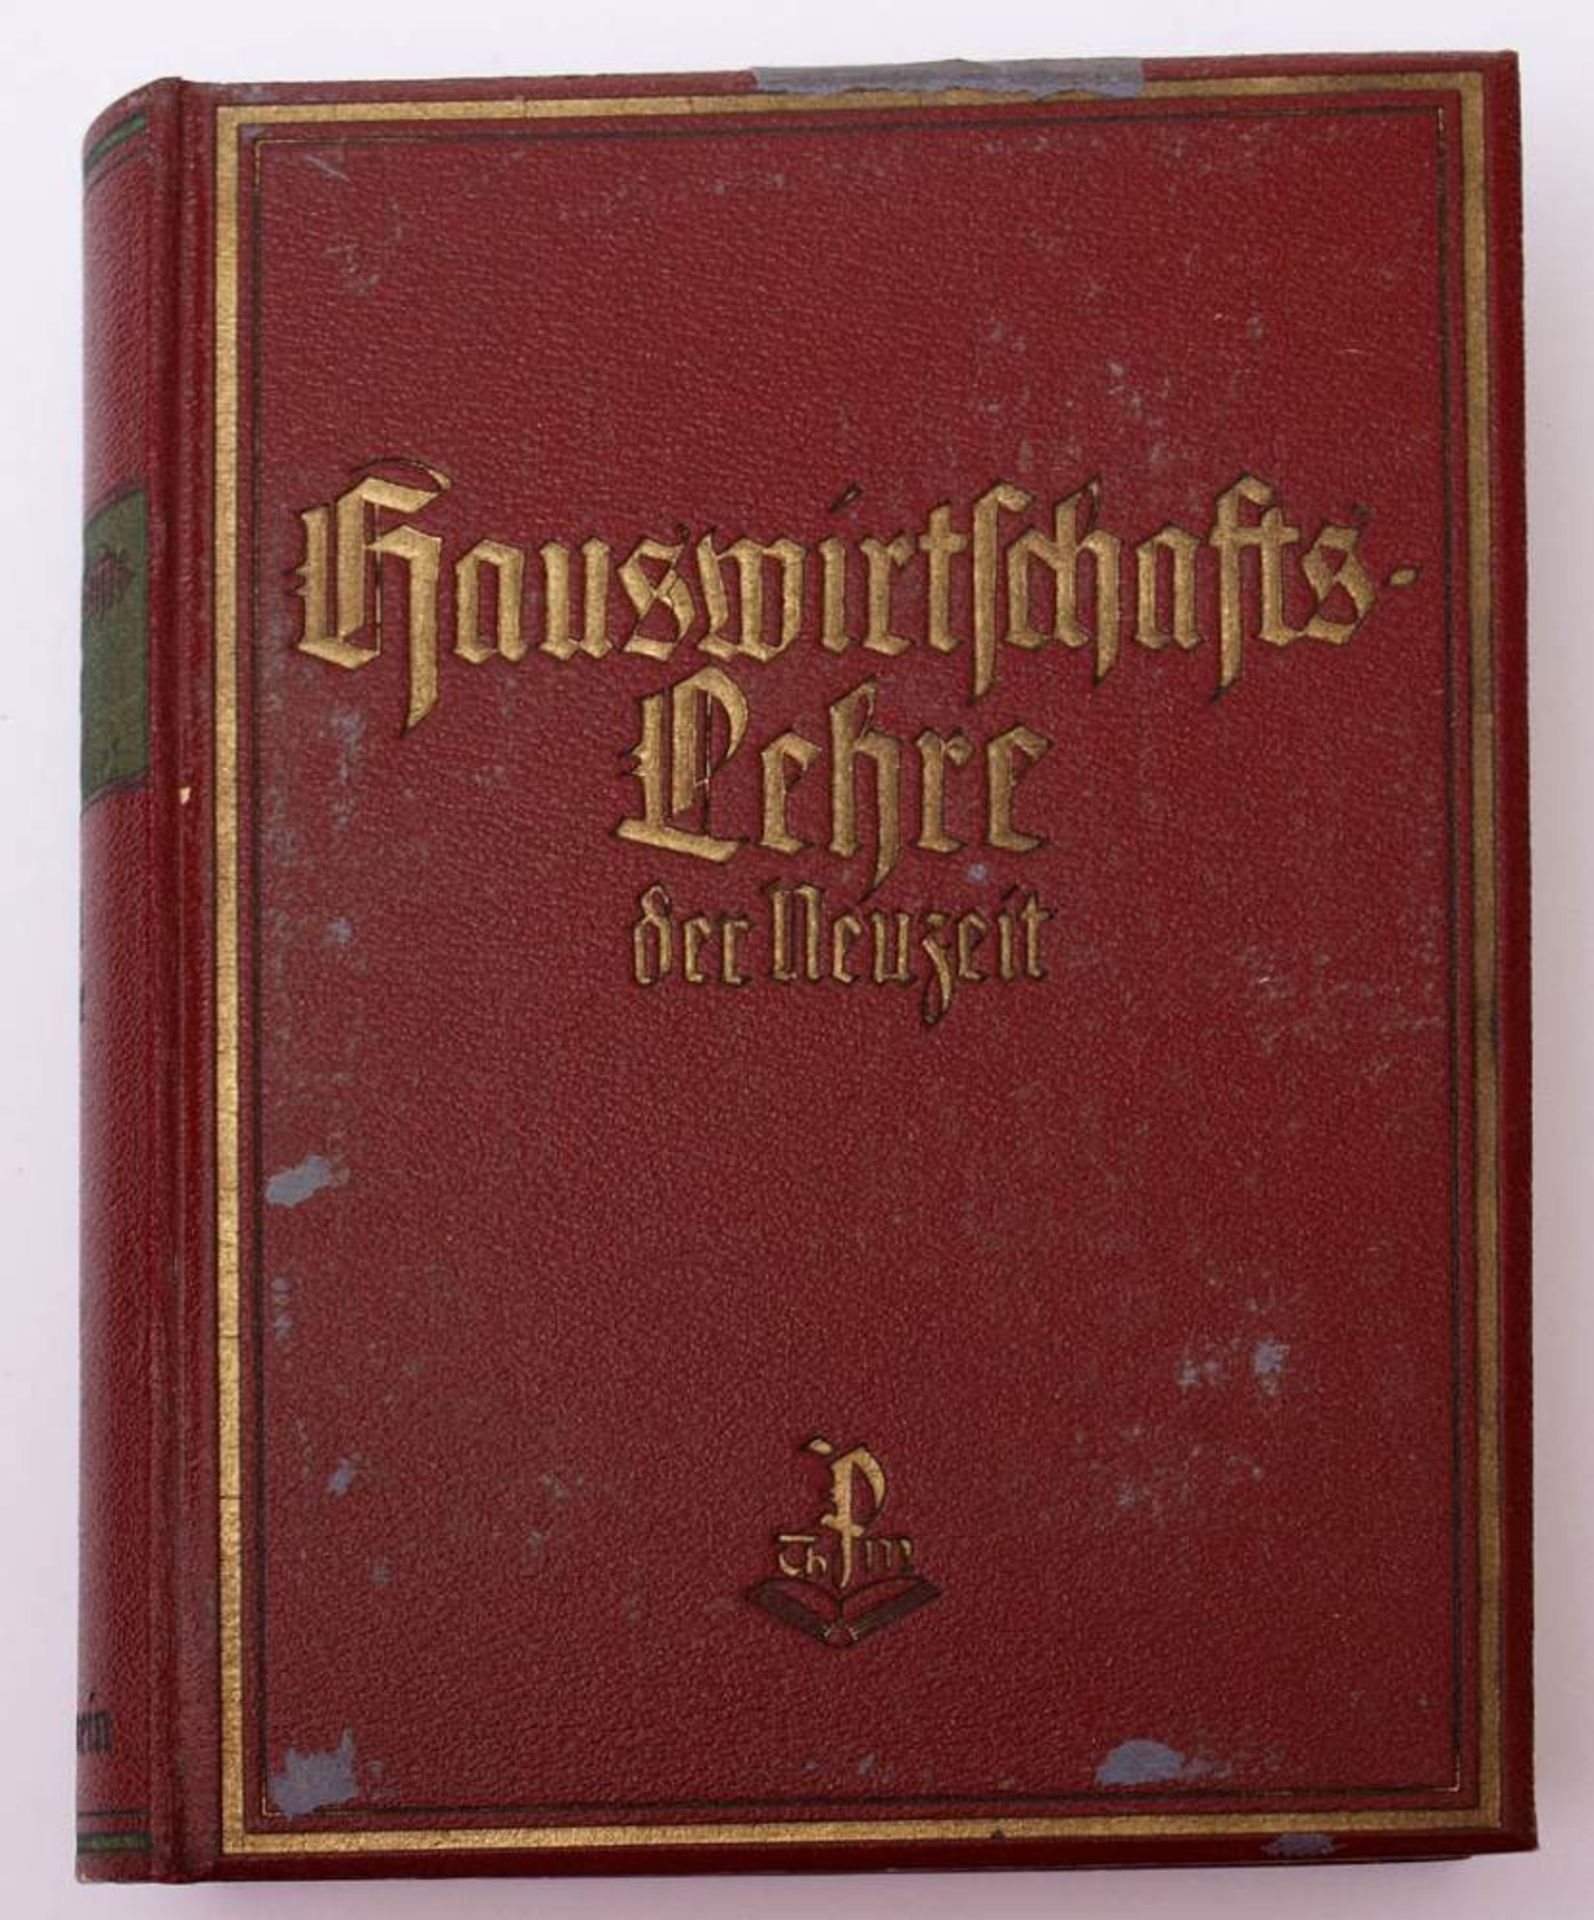 Erlewein, Eugenie: Hauswirtschaftslehre der Neuzeit3 Bde., W. Peter, München. Reich illustriert. - Bild 2 aus 5